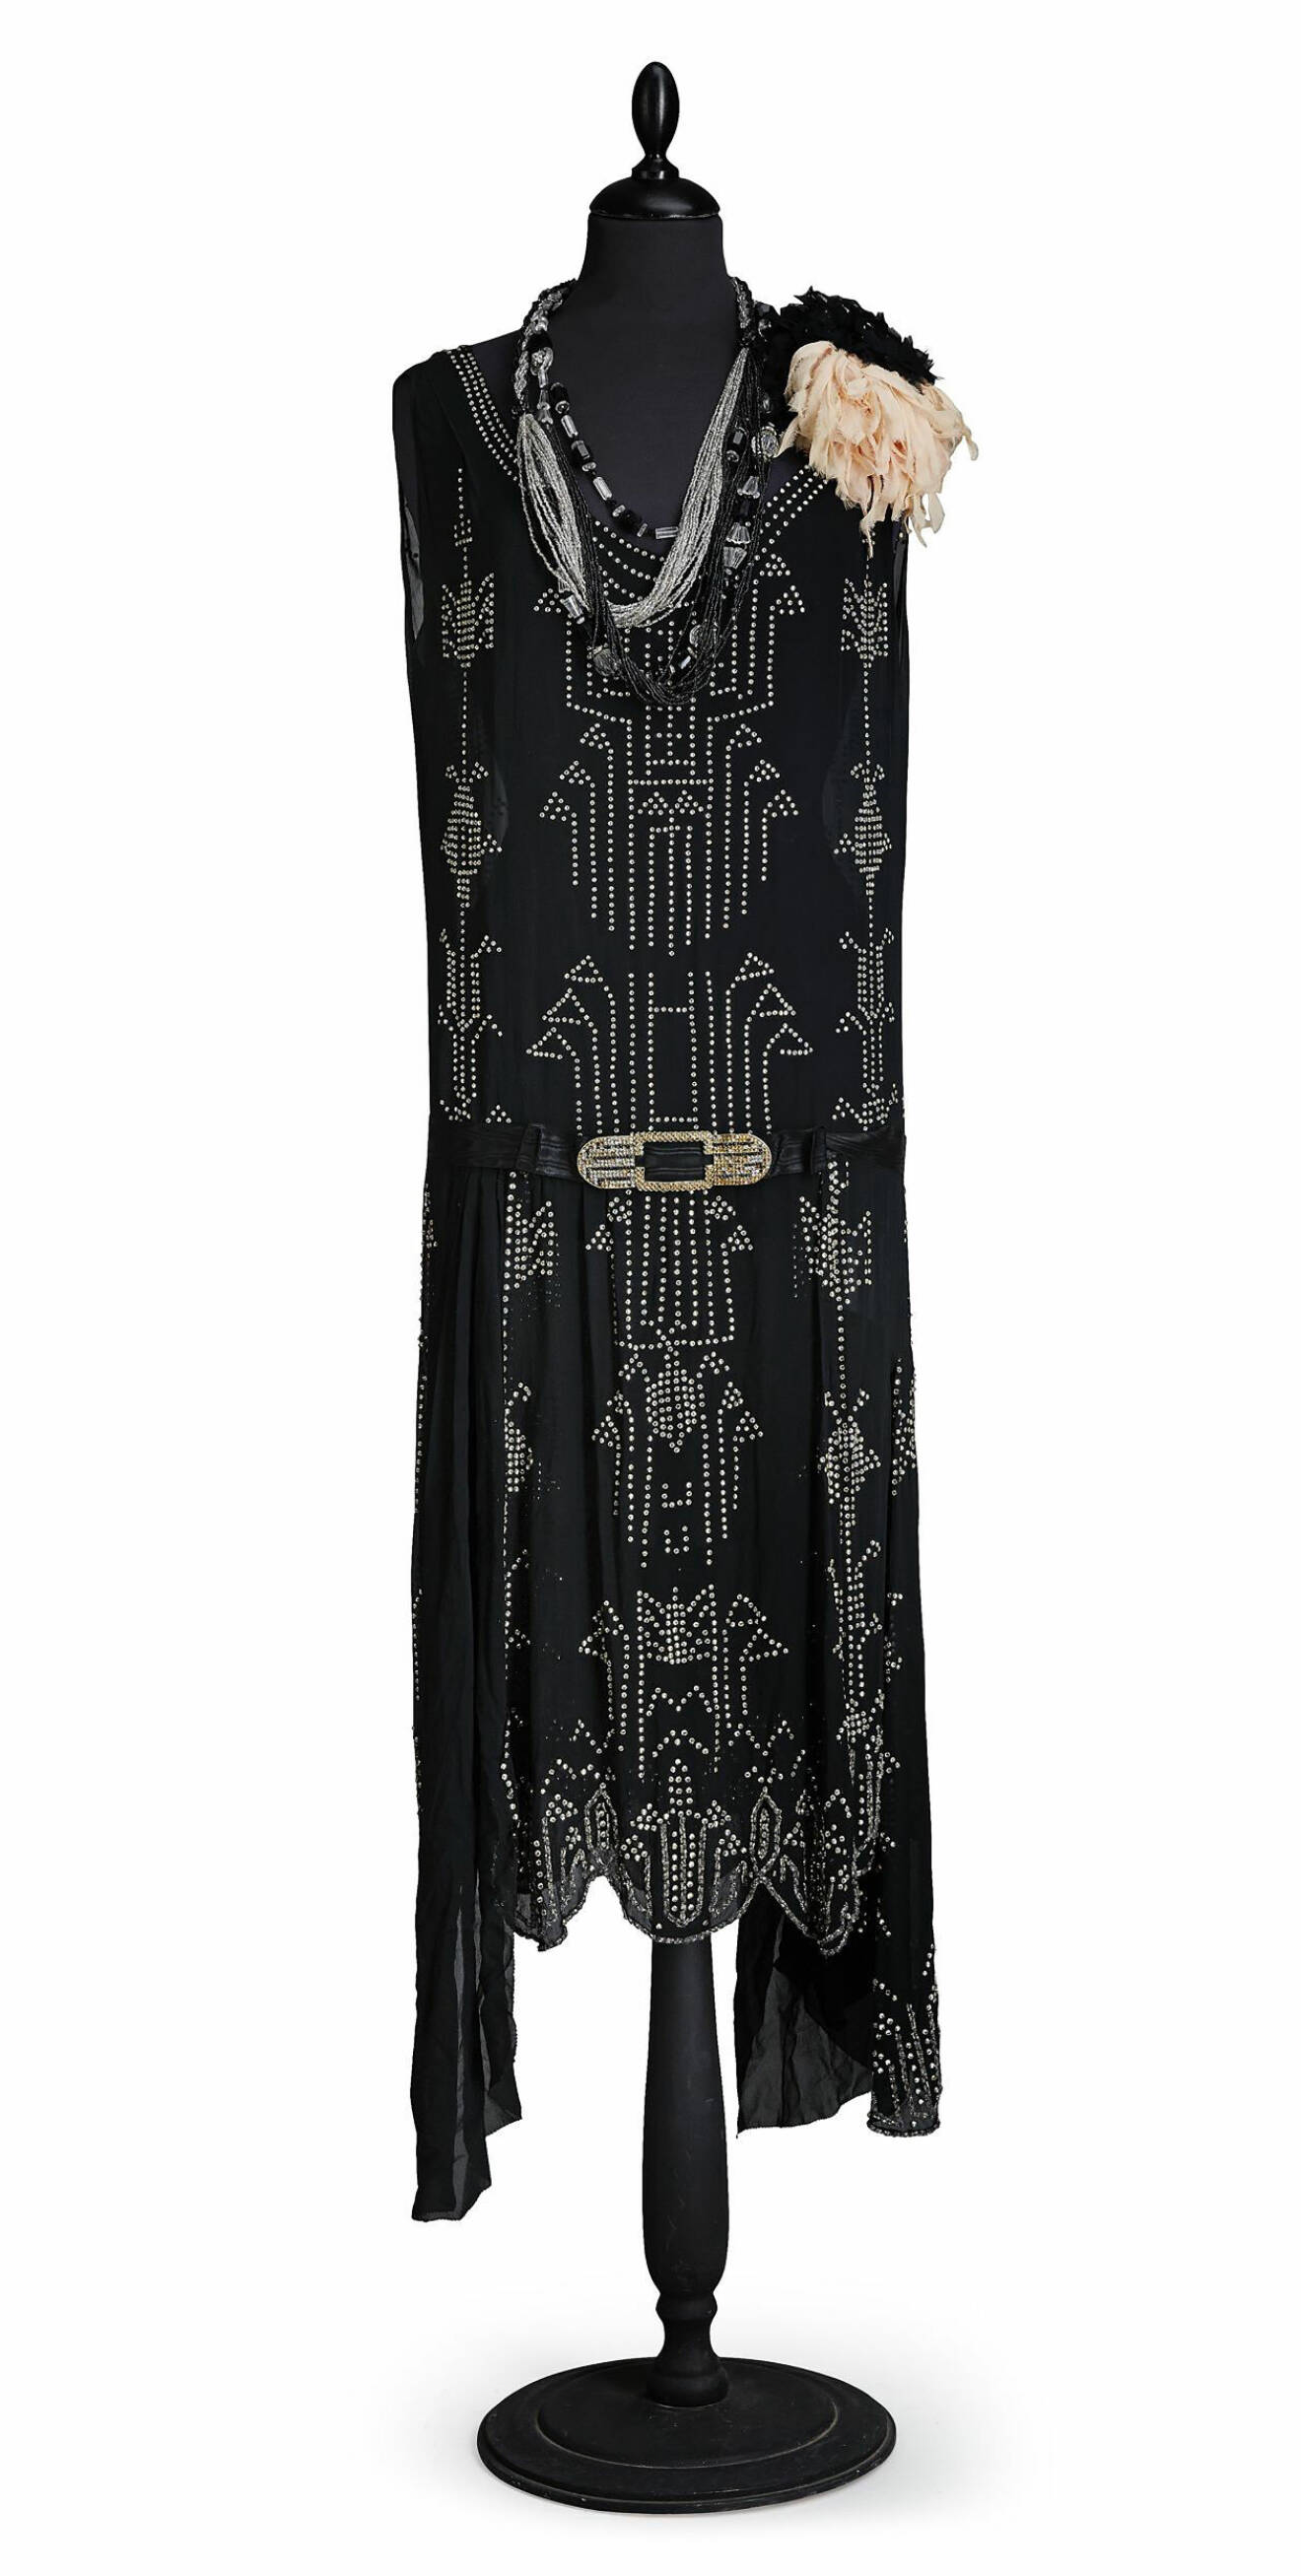 Svart glasbrodyrförsedd charlestonklänning från 1920-talet.